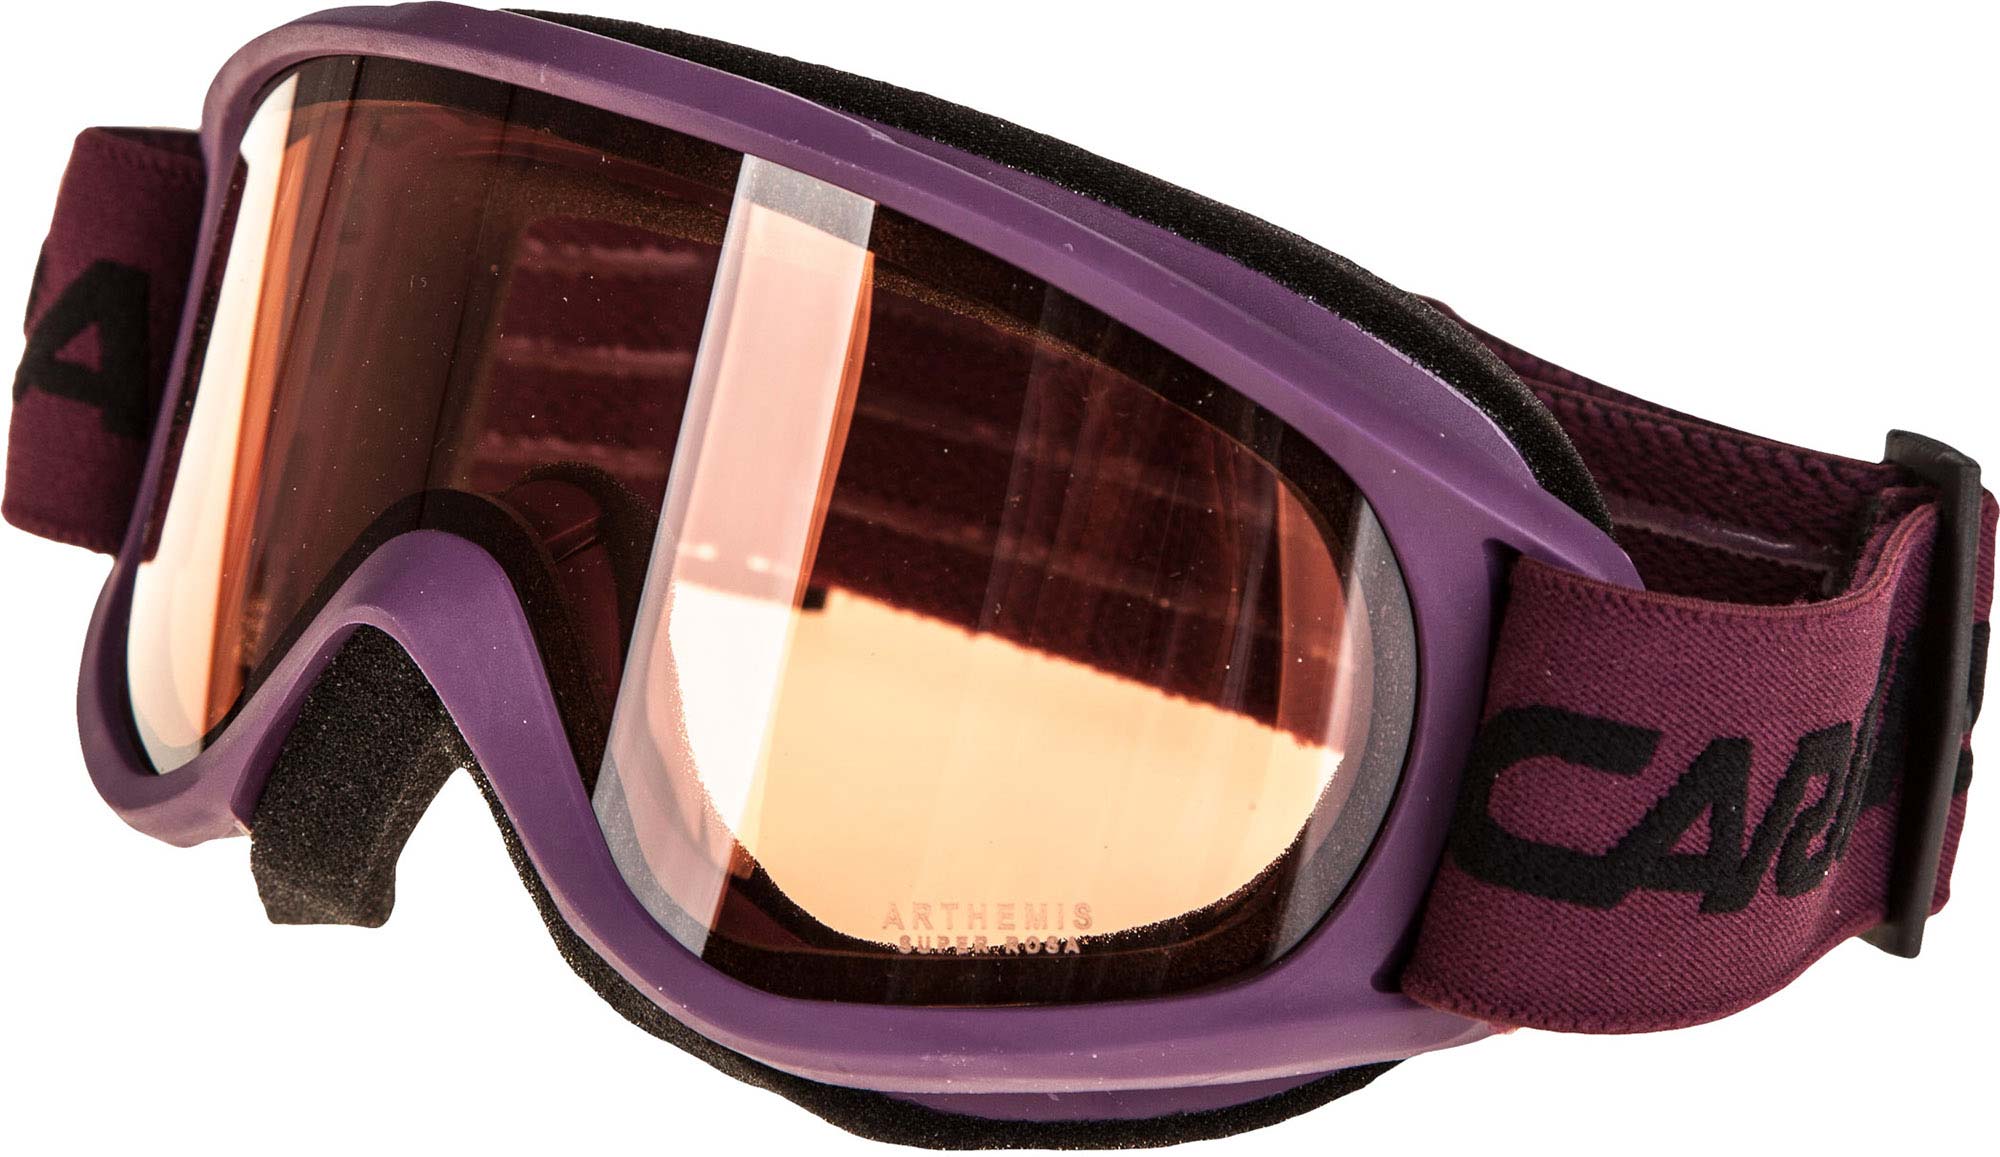 Women's Ski Goggles